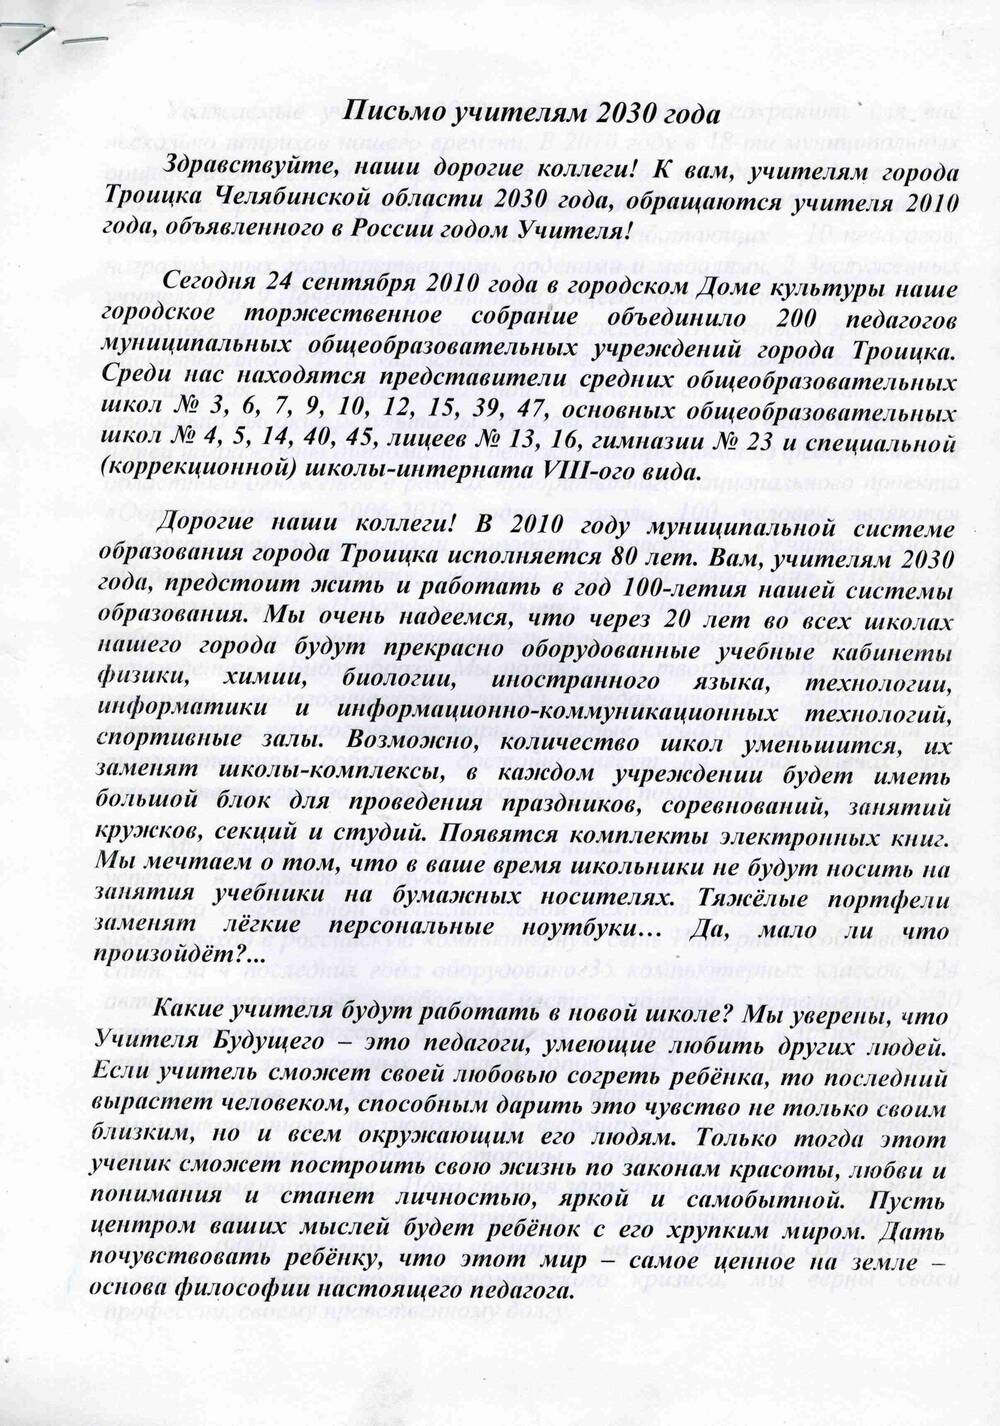 Письмо учителям г. Троицка Челябинской области 2030 года от учителей 2010 года, в конверте.